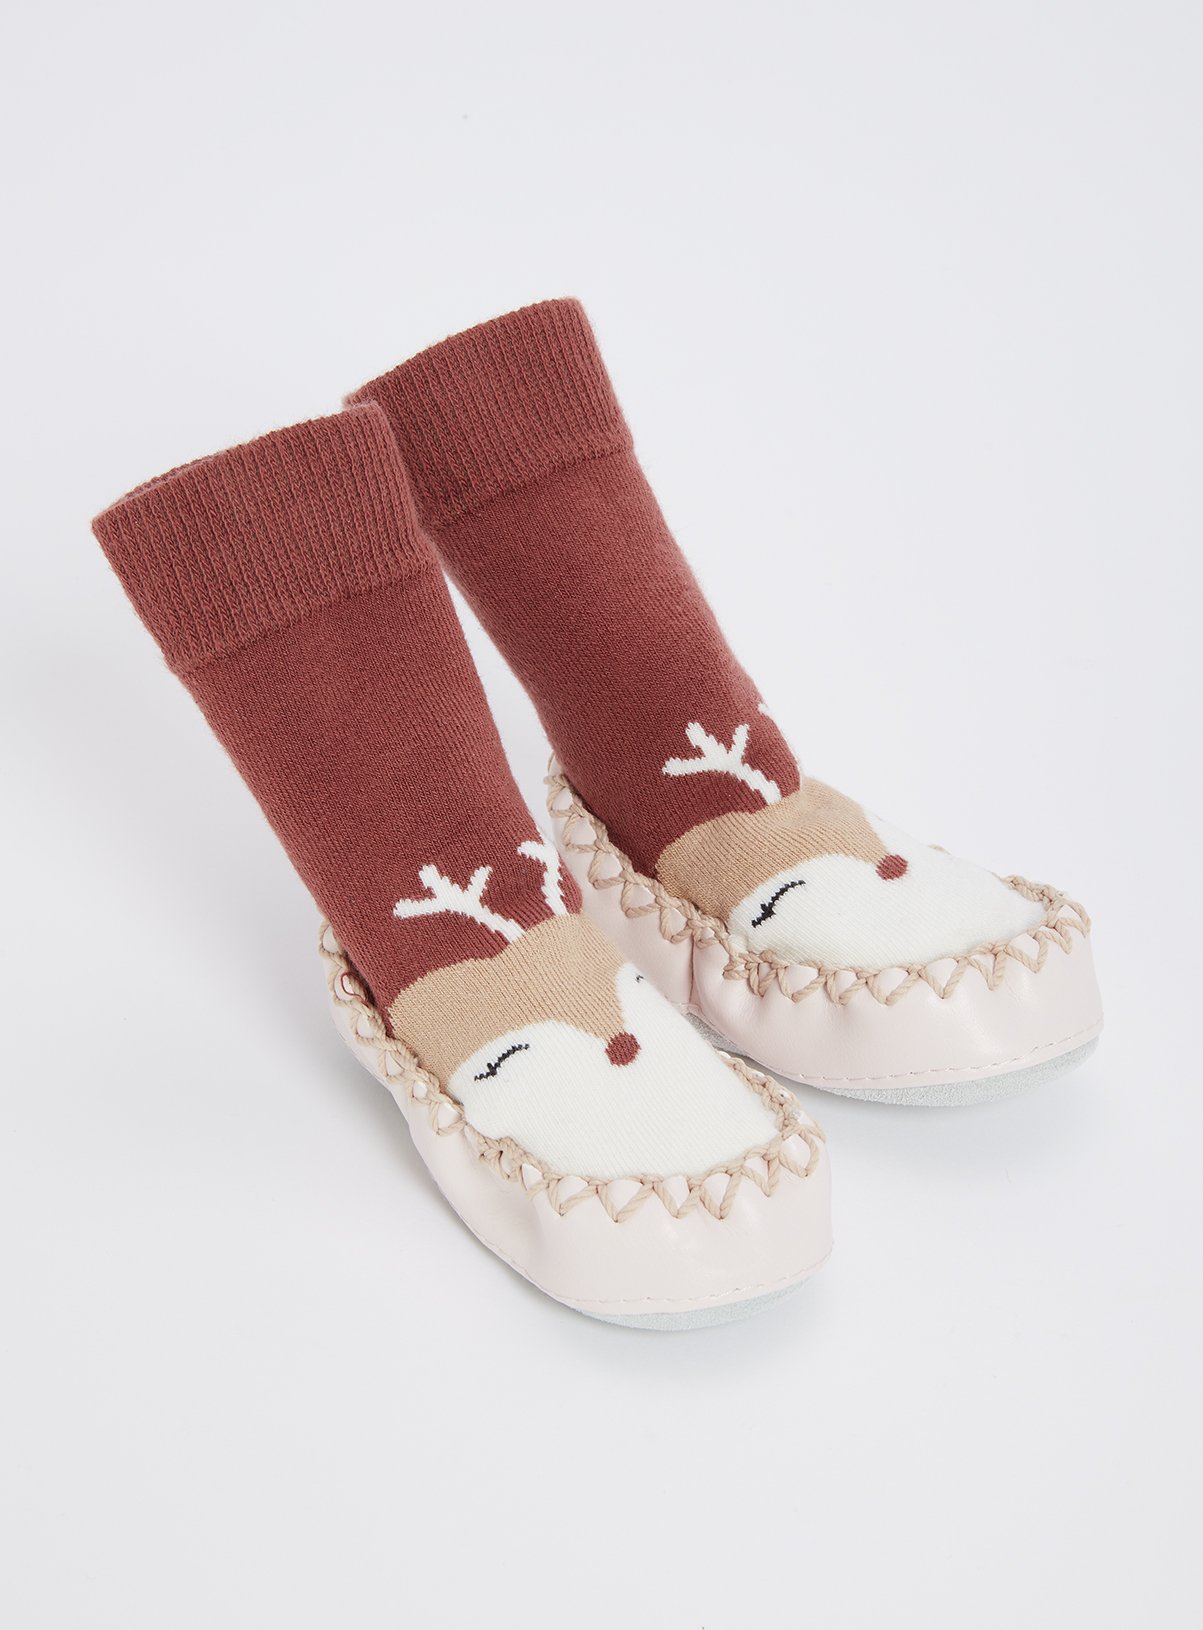 moccasin sock slippers